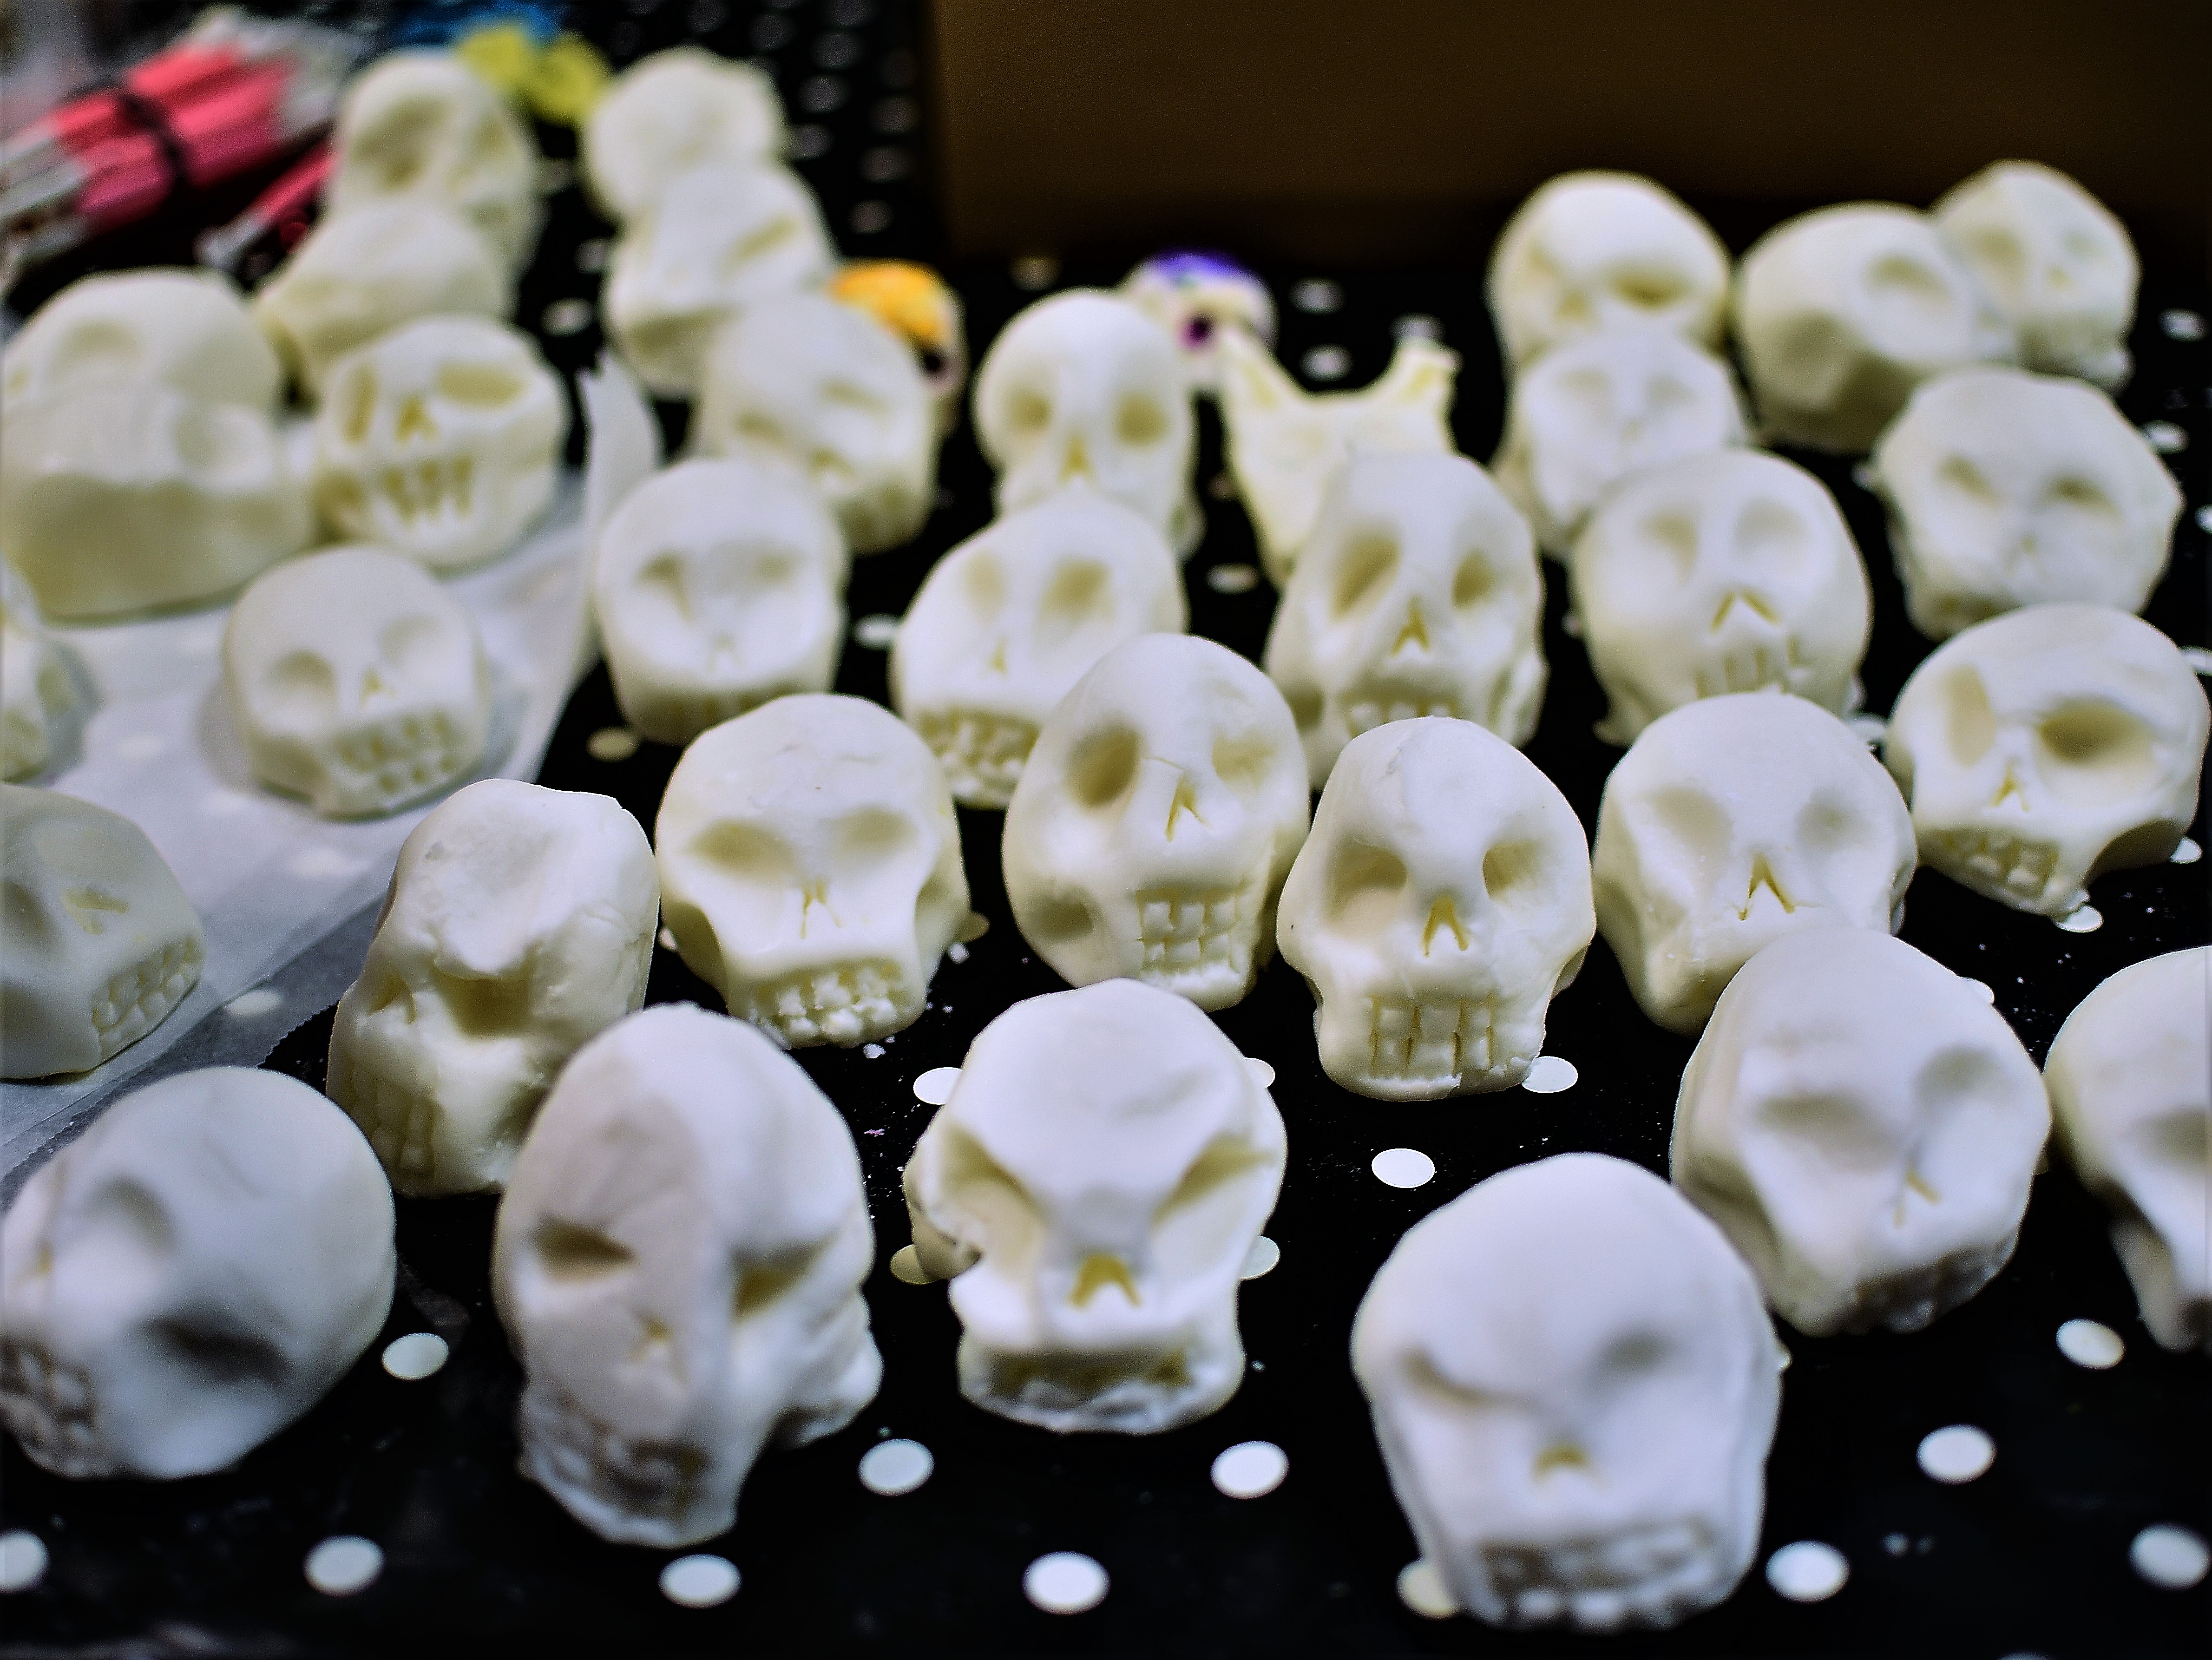 Zdjęcia z wystawy przedstawiające przedmioty w kształcie czaszek.